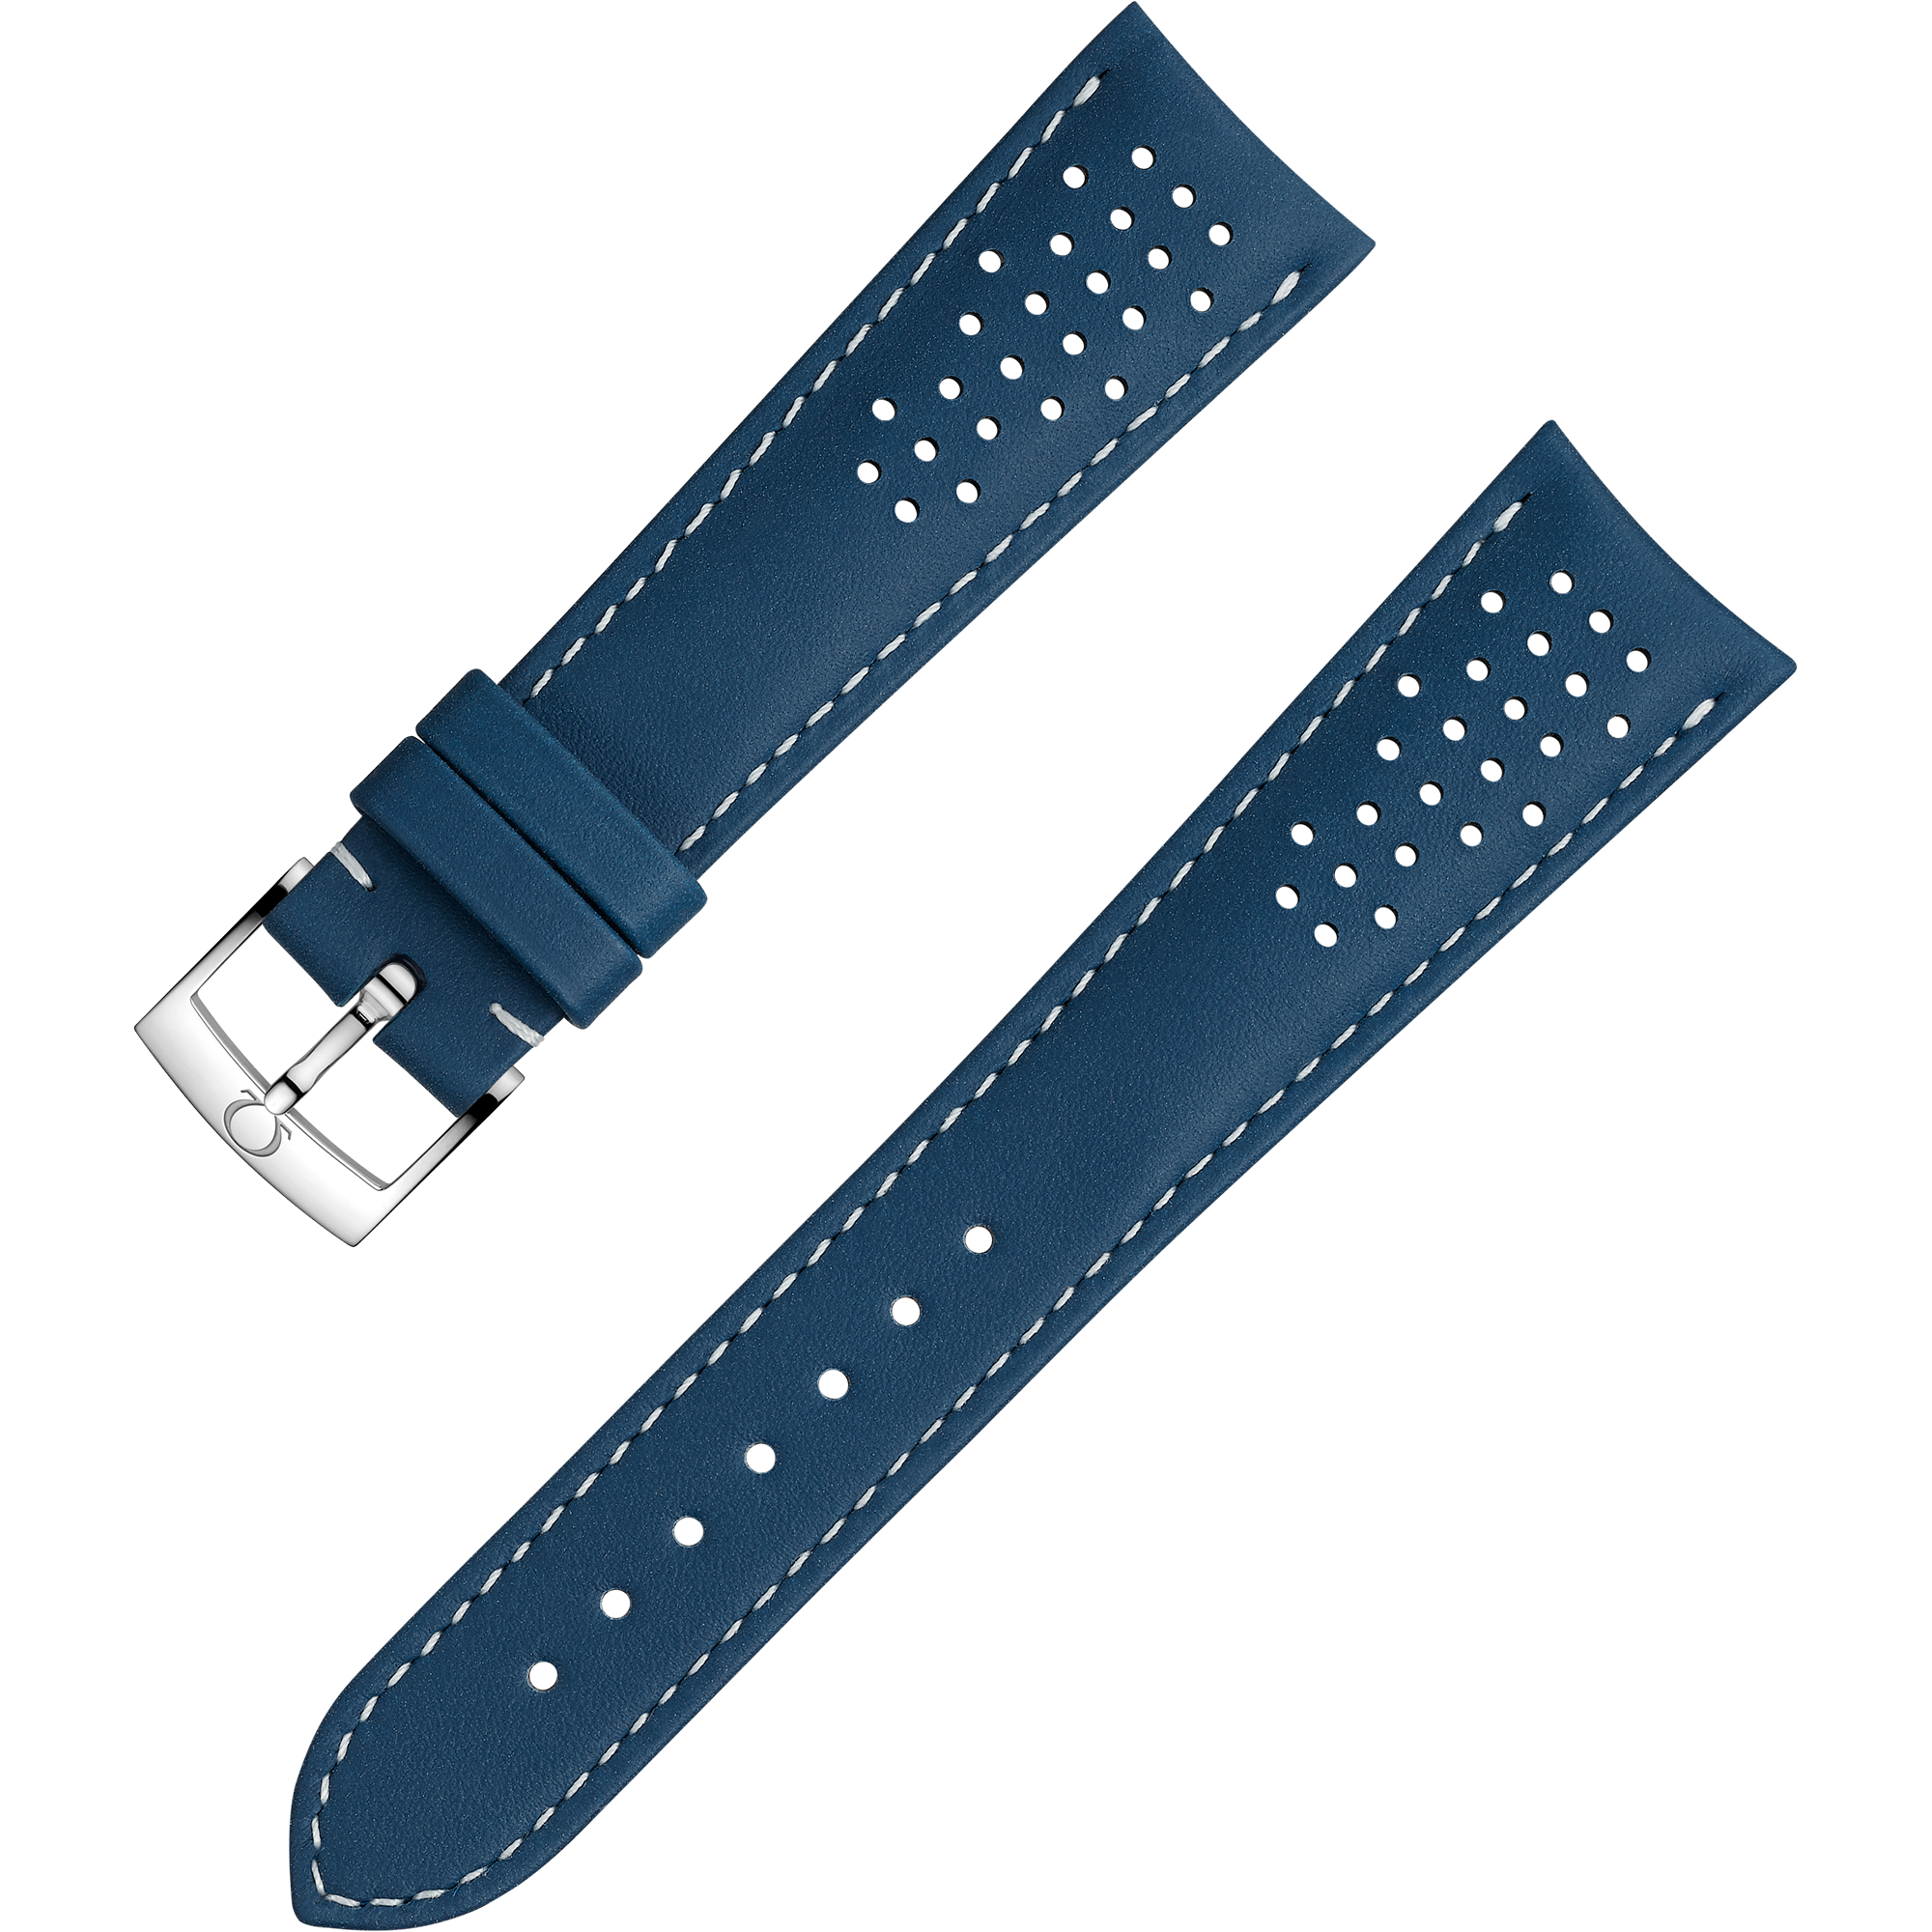 Zweiteiliges armband - Blaues Lederarmband mit Dornschließe - 032CUZ010011